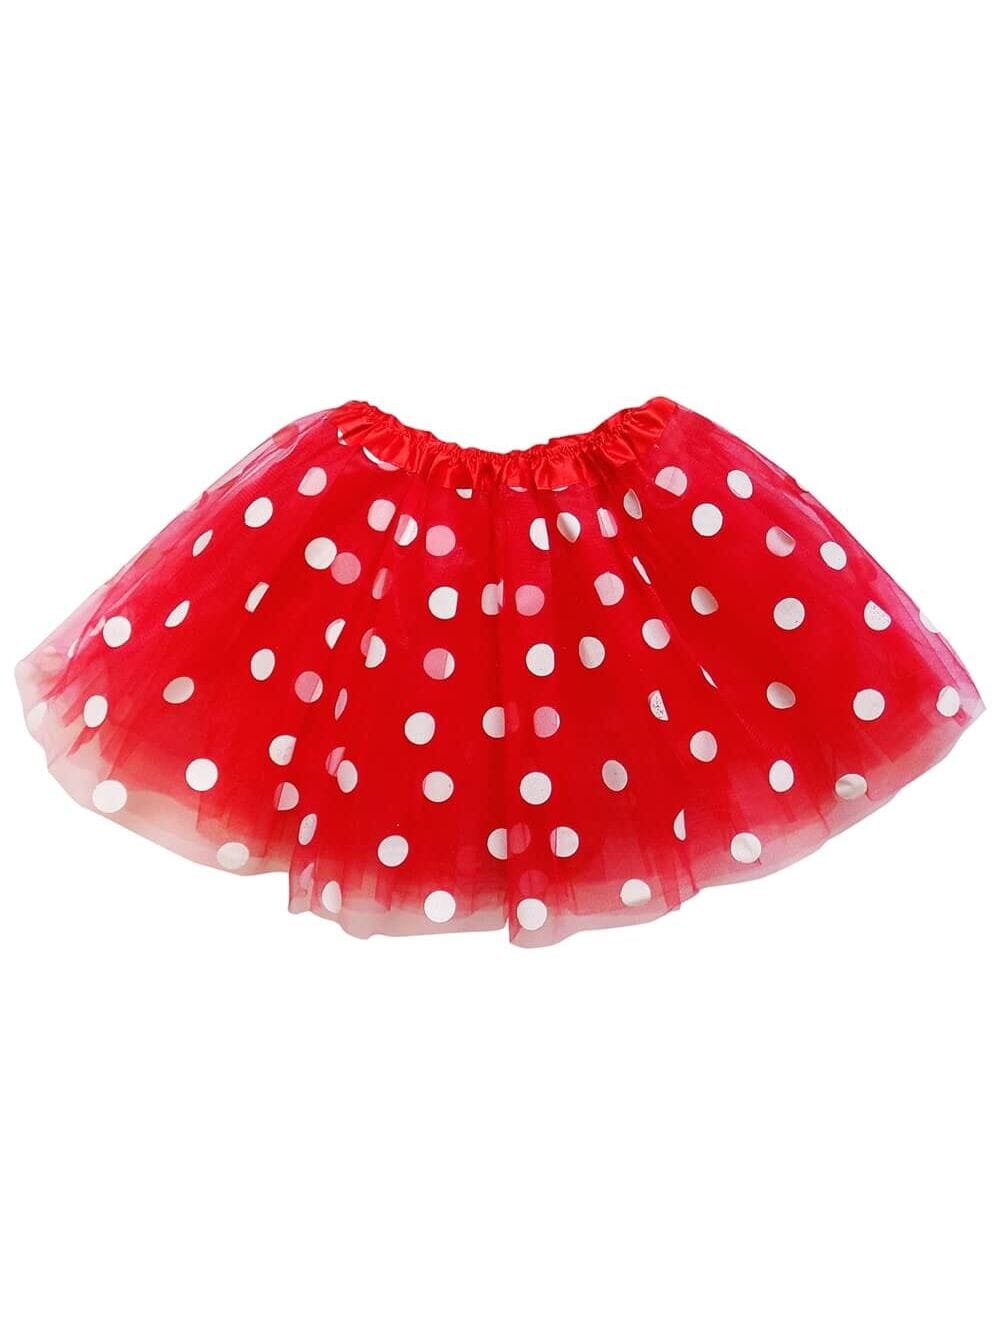 Red and White Polka Dot Tutu Skirt Costume for Girls, Women, Plus - Sydney So Sweet